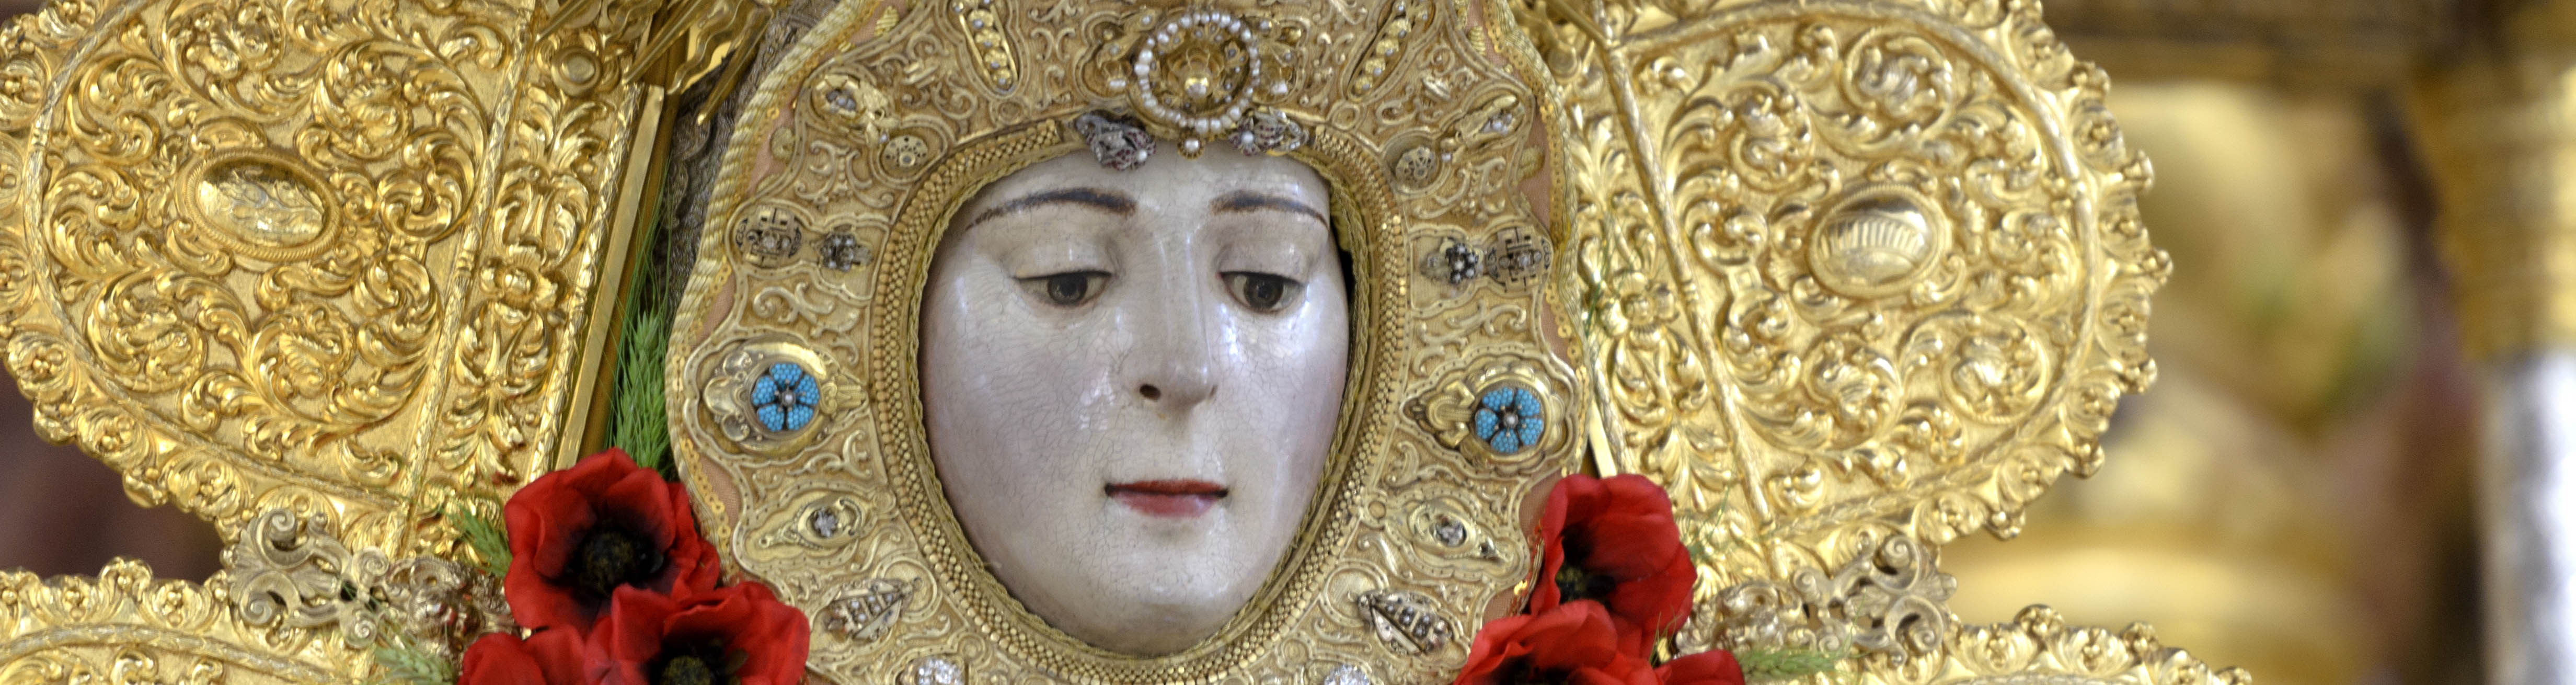 La Virgen del Rocío espera ya a los miles de devotos que poblarán la Aldea este fin de semana